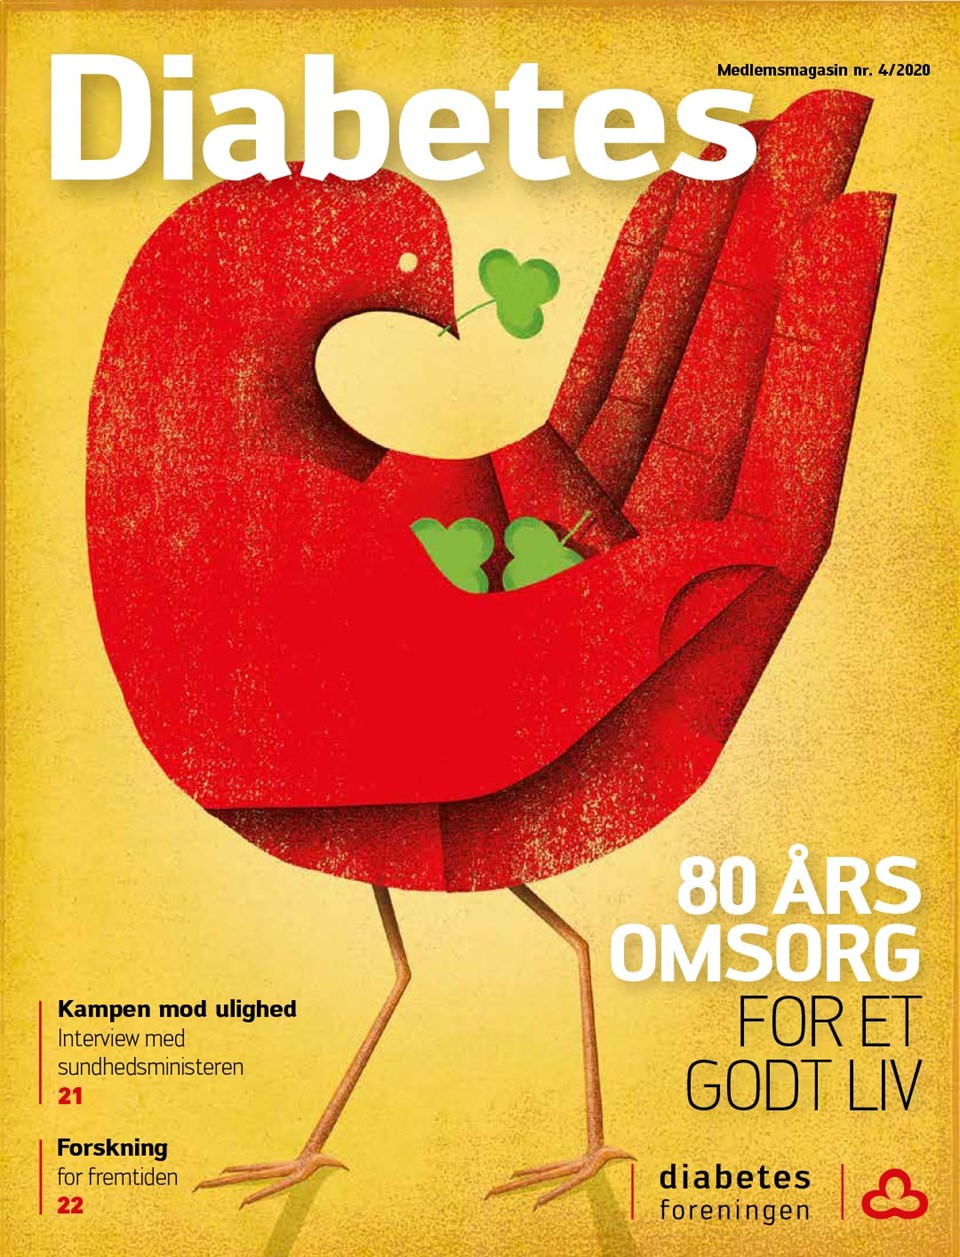  Forside af magasinet Diabetes november 2020